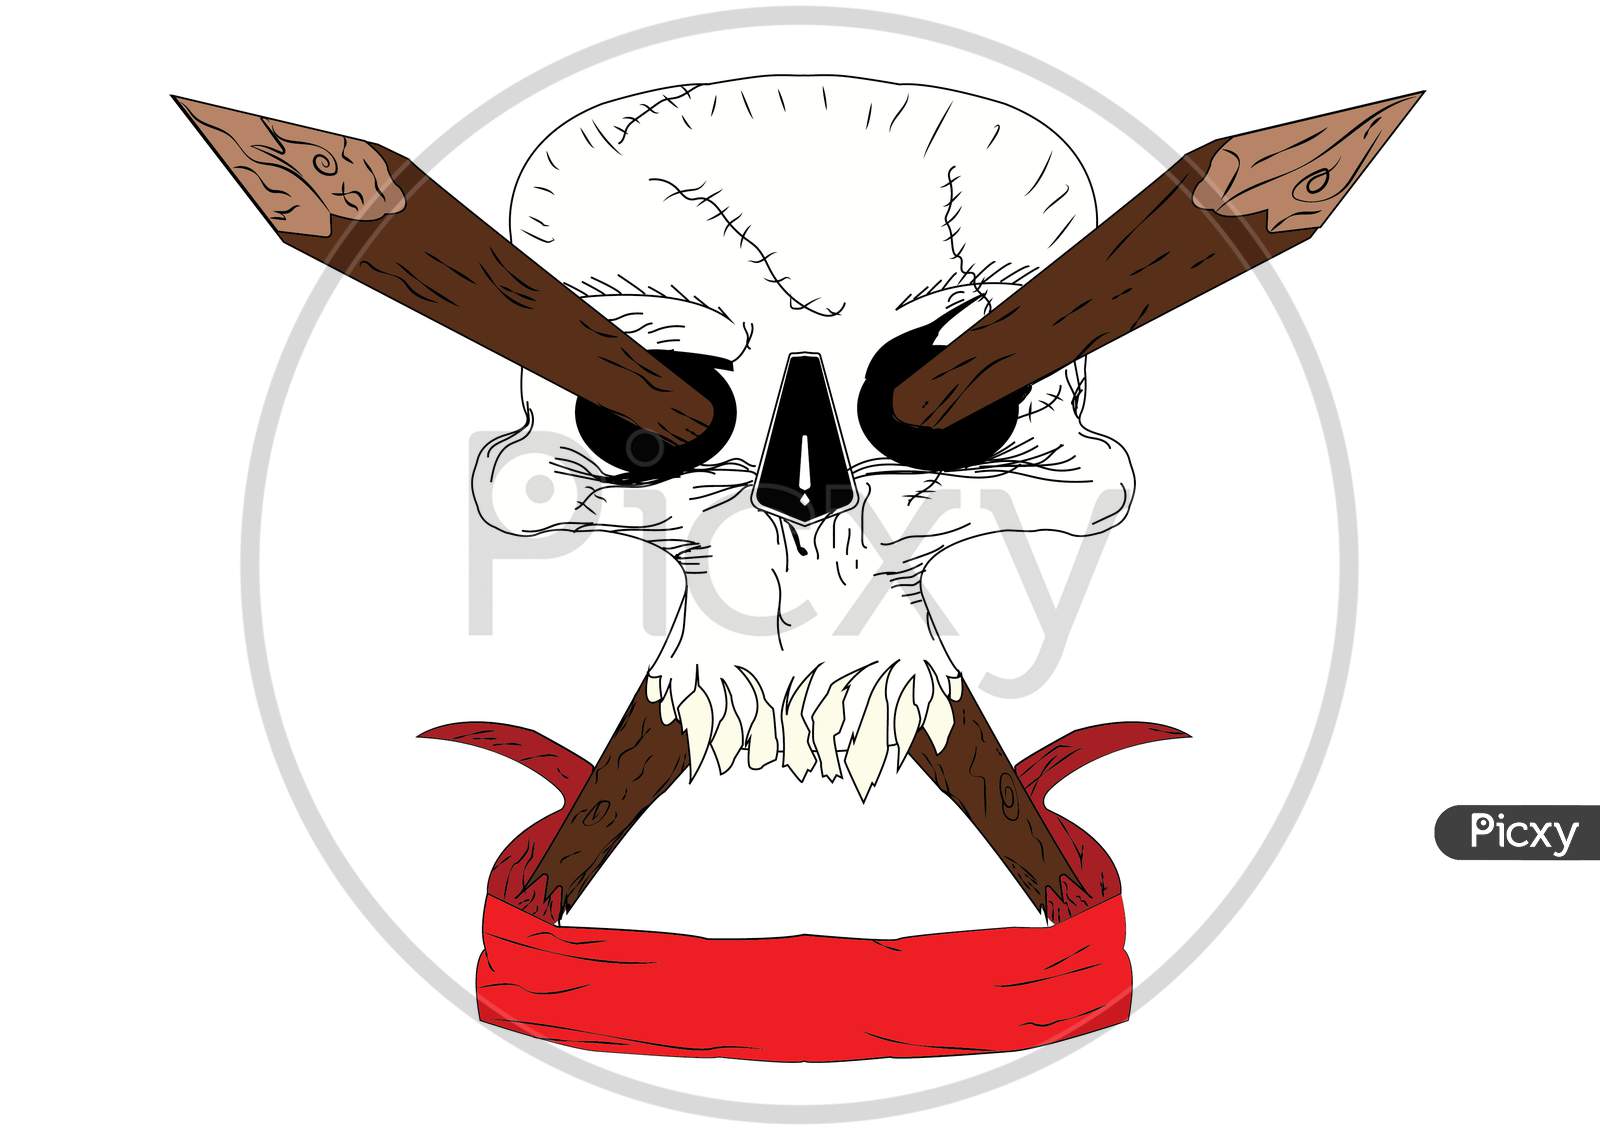 Skull Wallpaper illustration for desktop background.